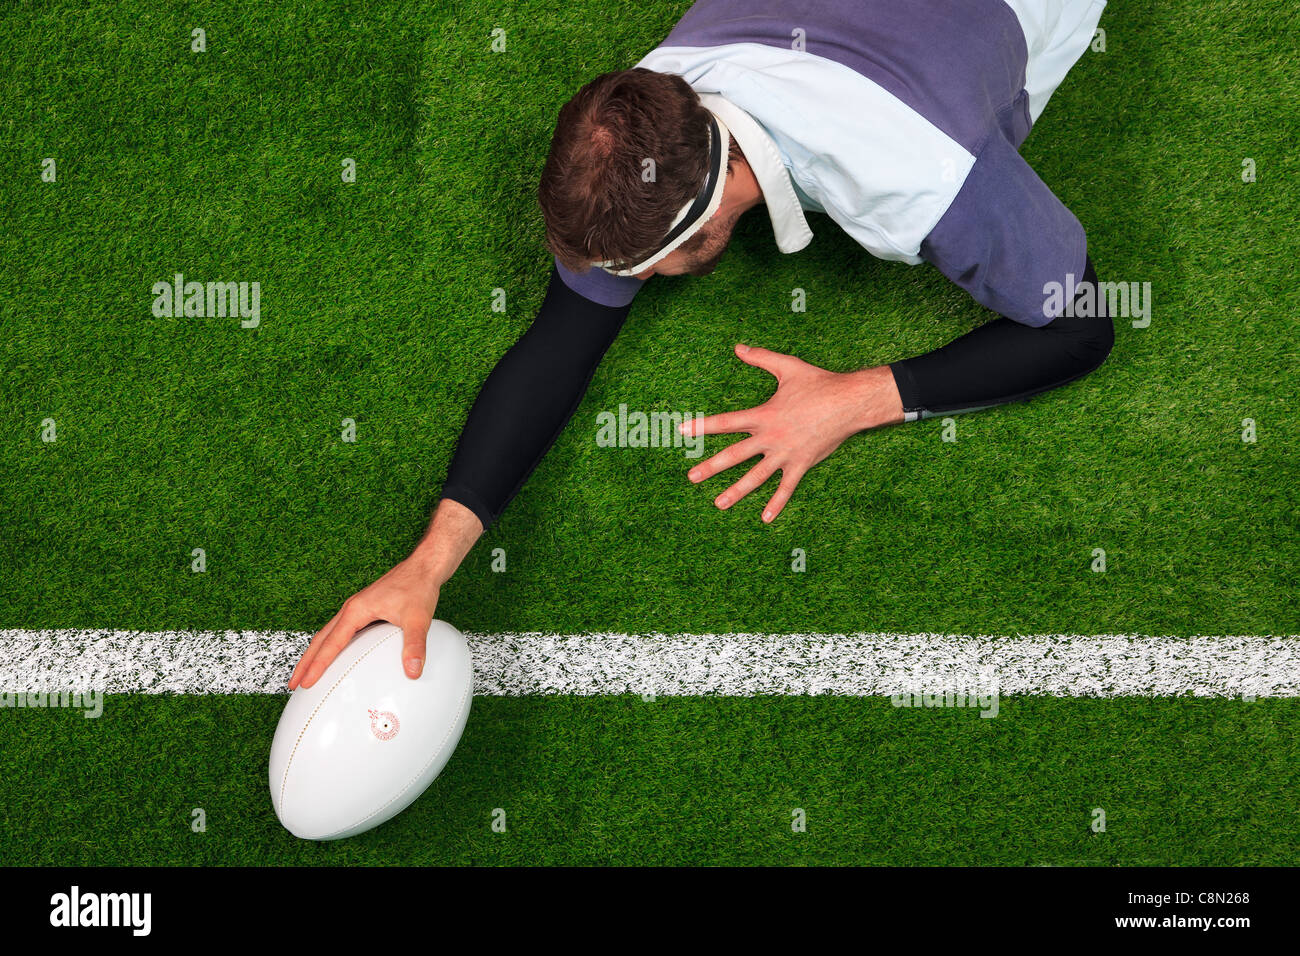 Photo prise à la verticale d'un joueur de rugby qui s'étend sur la ligne pour marquer un essai d'une main sur la balle. Banque D'Images